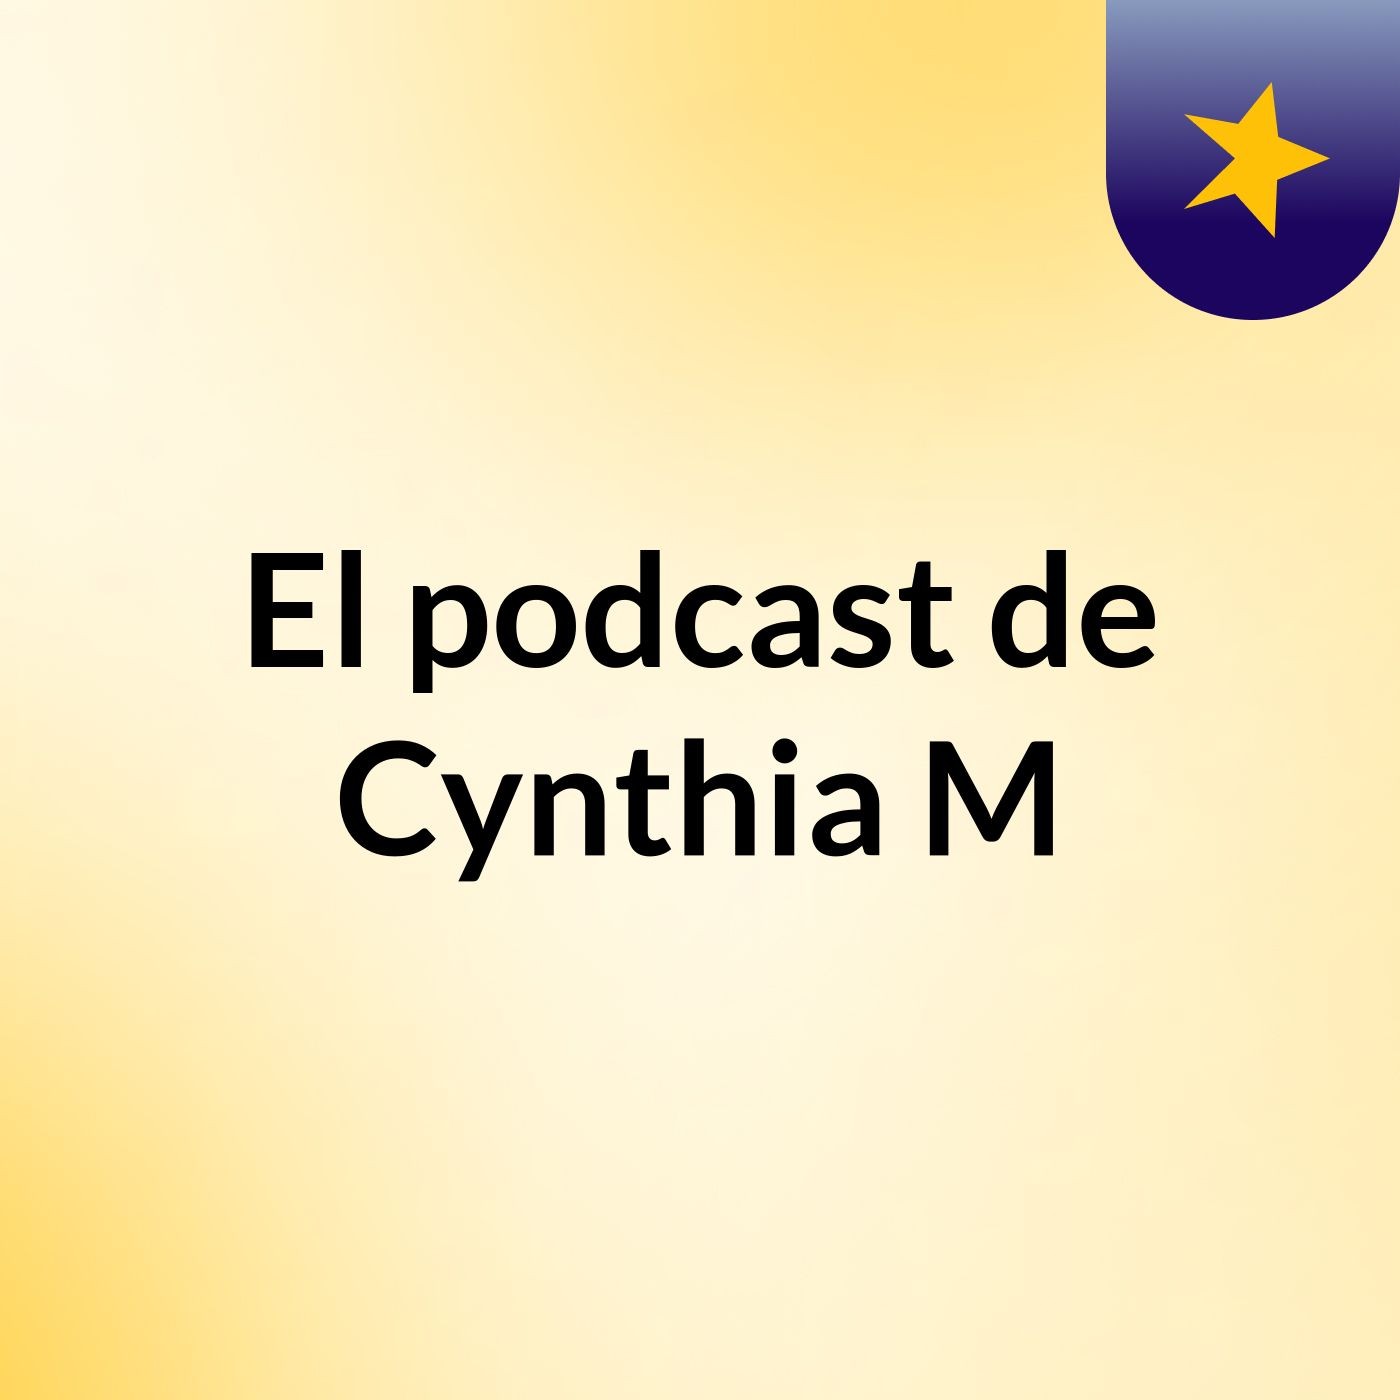 El podcast de Cynthia M